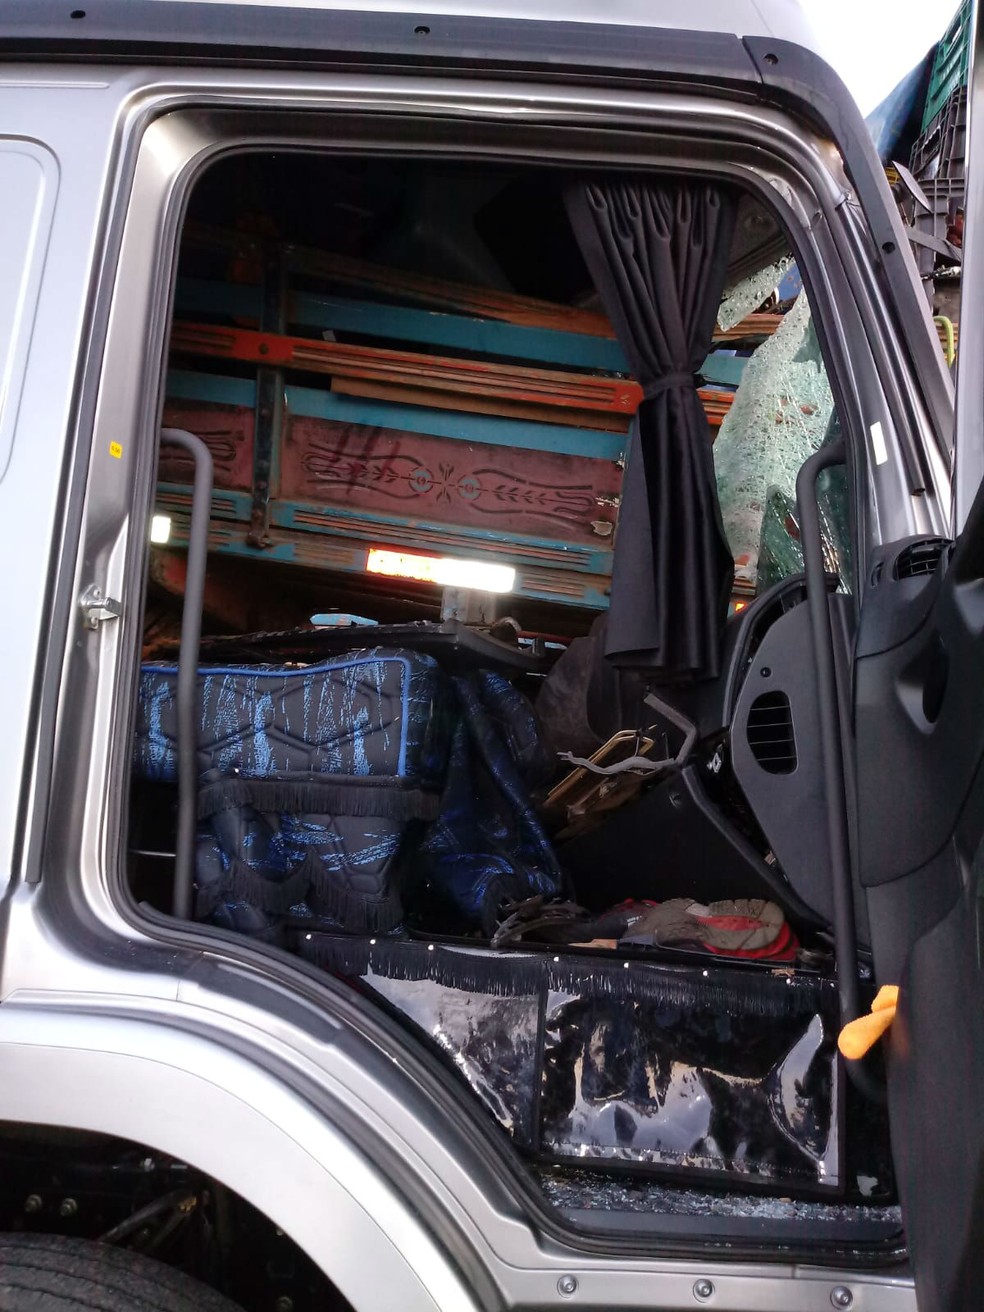 Engavetamento interdita a Rodovia Raposo Tavares e provoca mortes em Sorocaba — Foto: Arquivo Pessoal